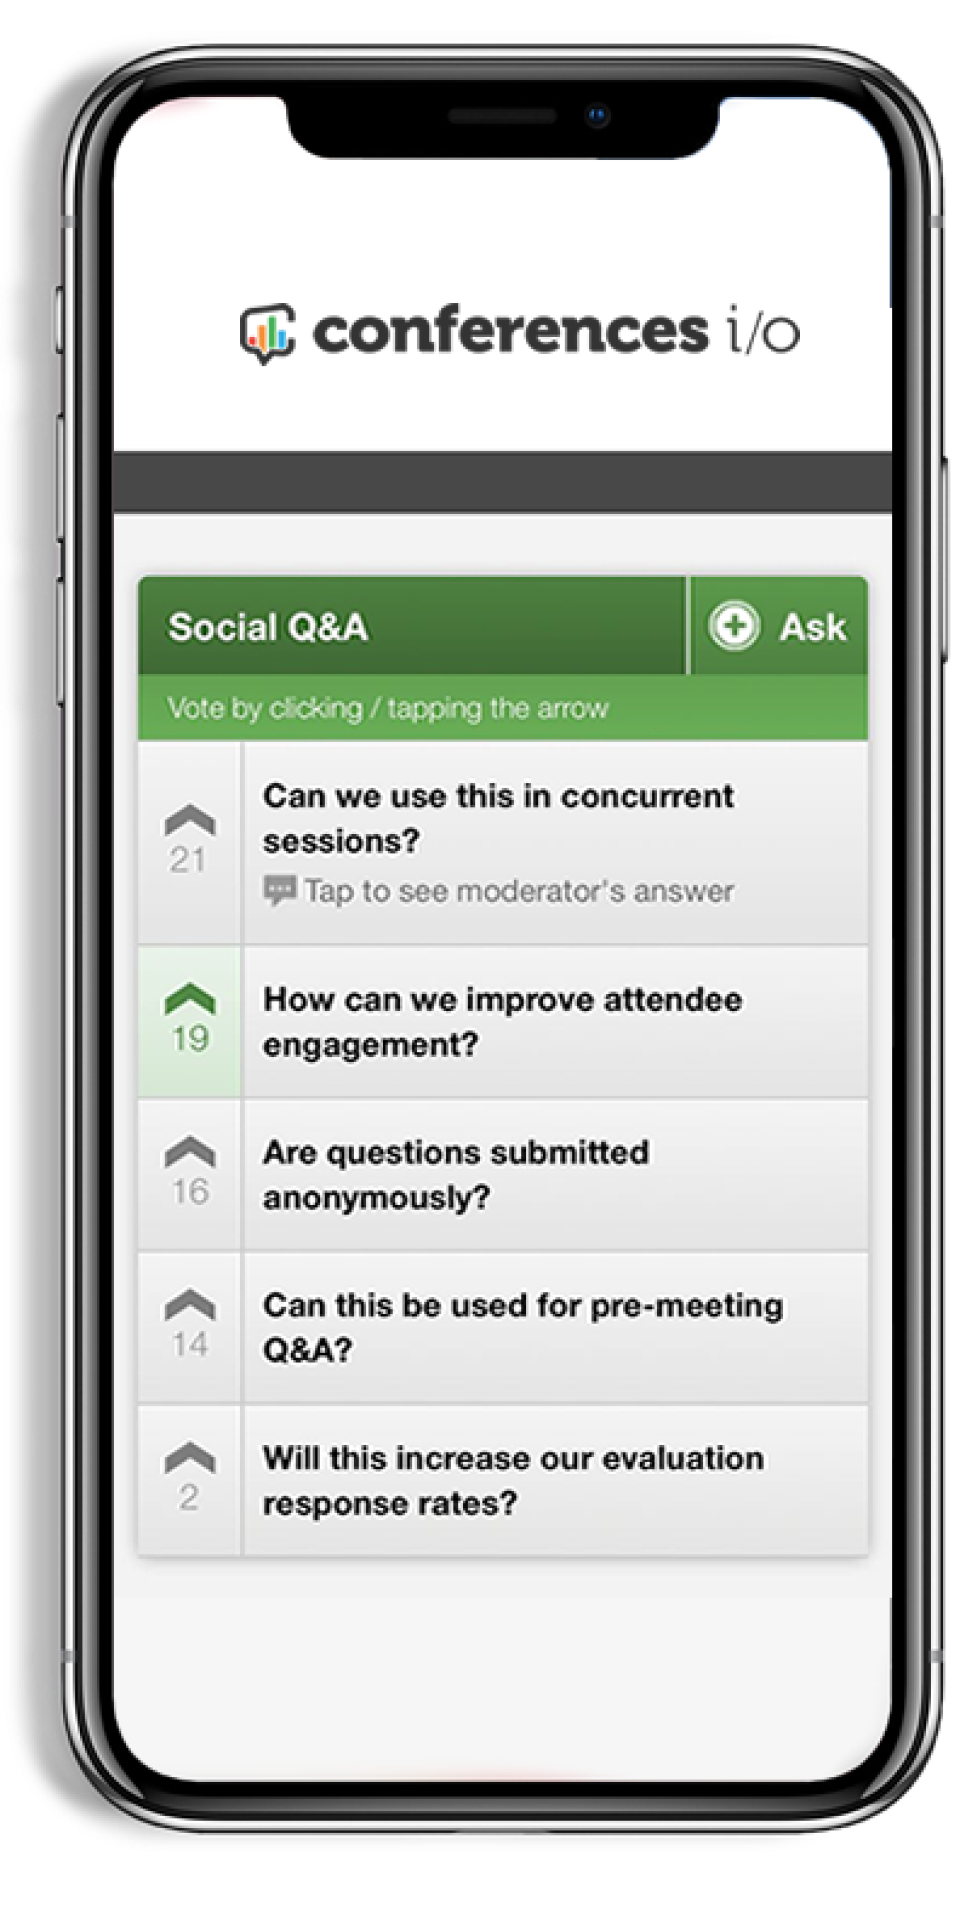 Conferences io Software - Social Q&A